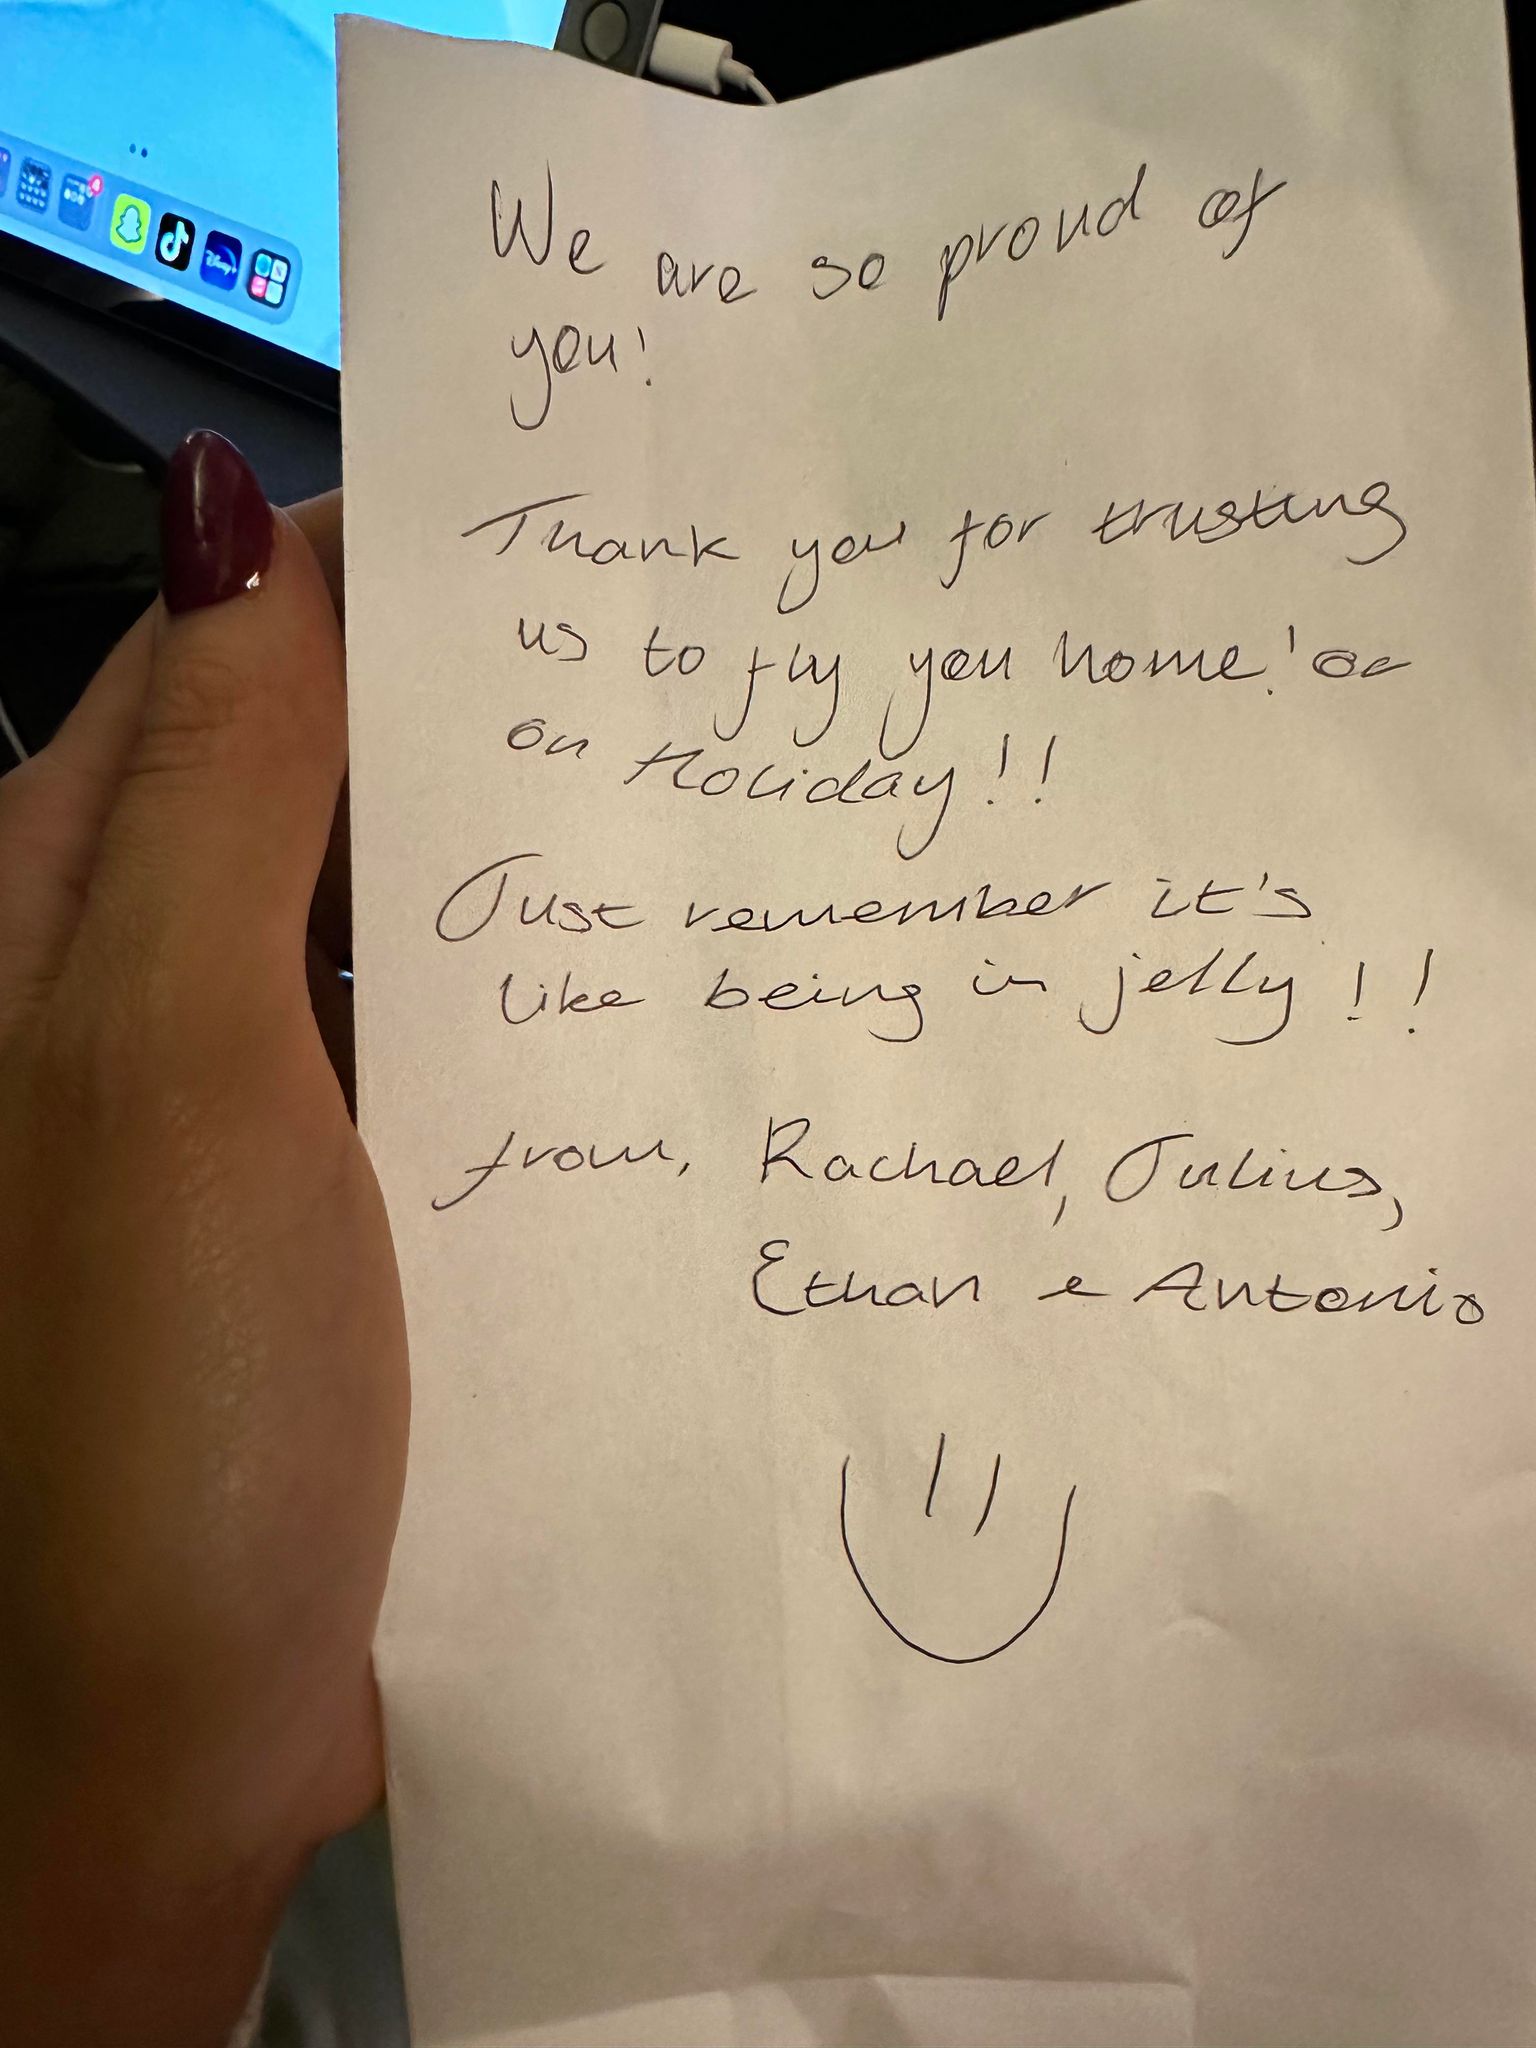 Die Flugbegleiter gaben Veritys Tochter einen Zettel, um ihre Flugangst zu lindern